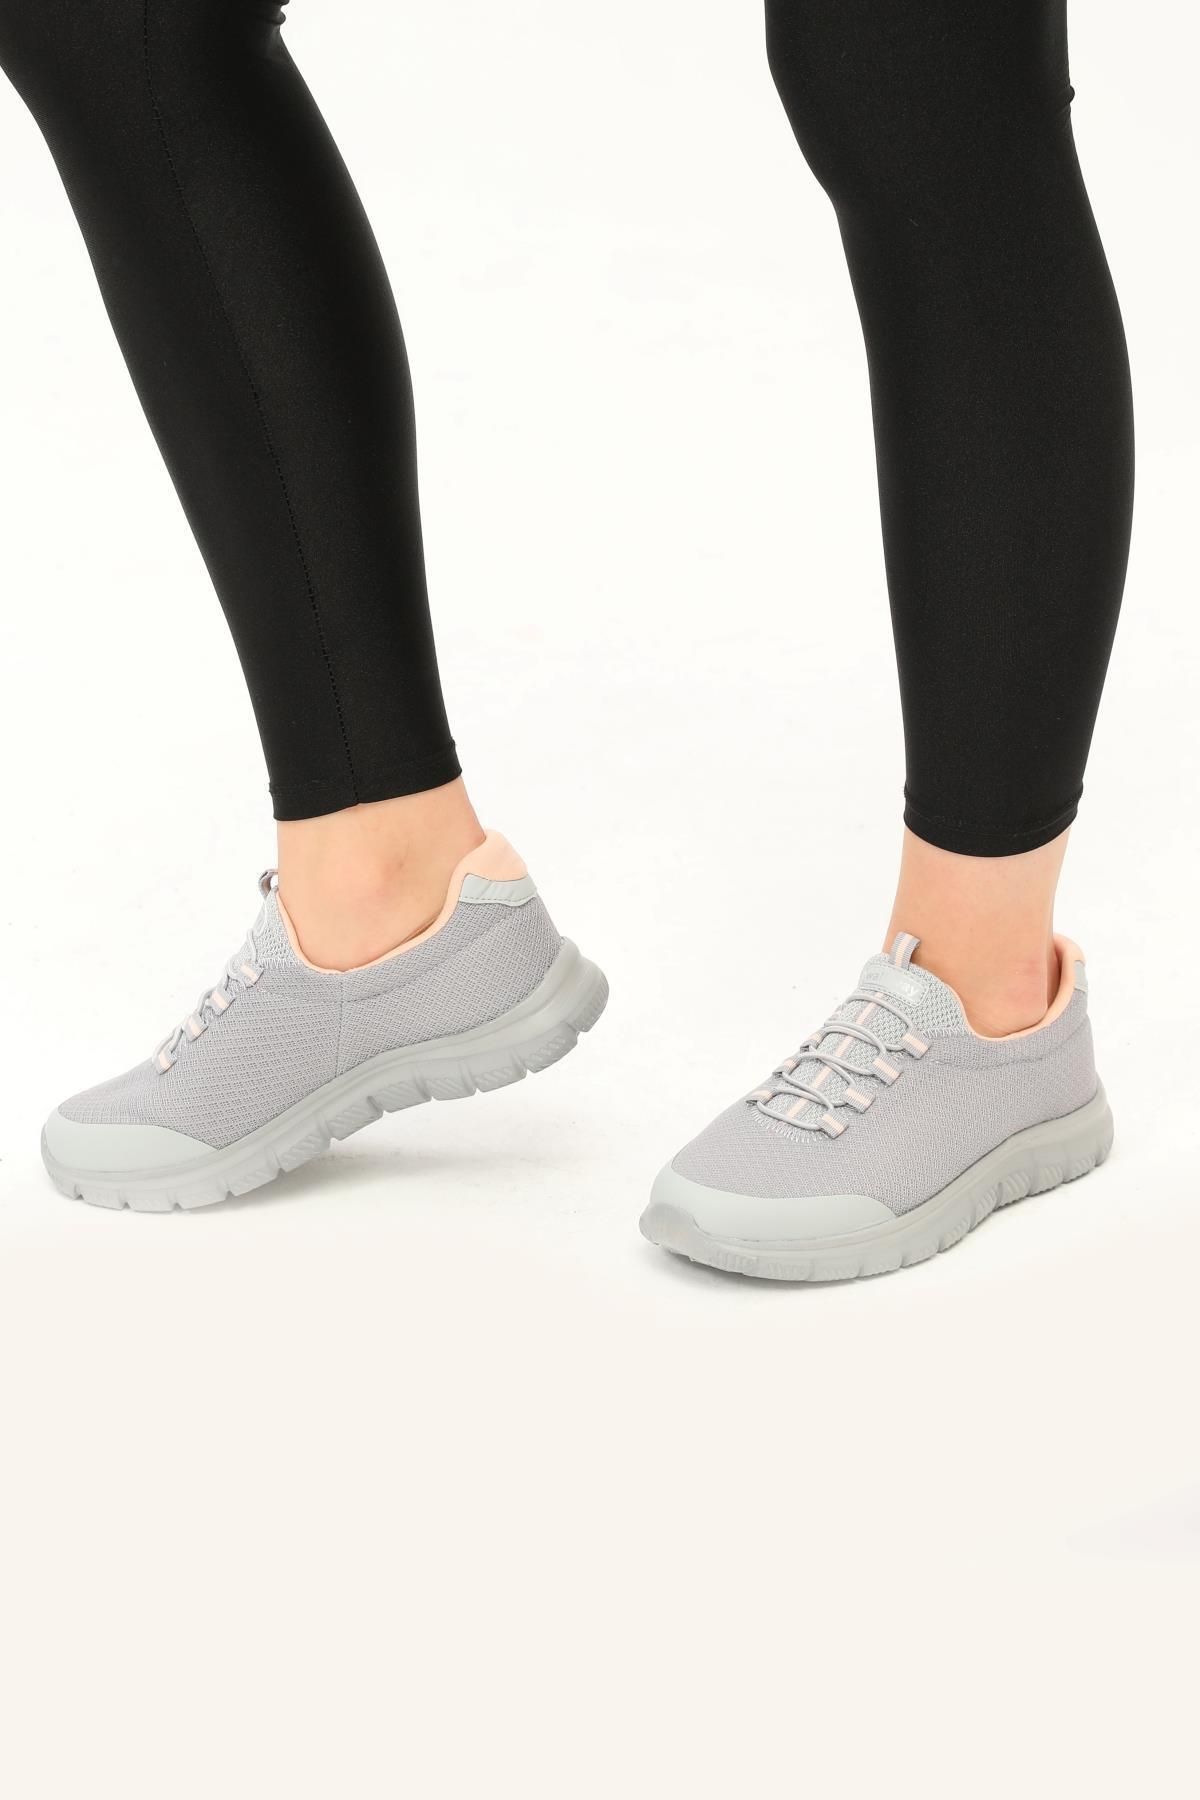 WALKWAY Flexible Buz-pembe Comfort Fileli Kadın Yürüyüş Ayakkabısı